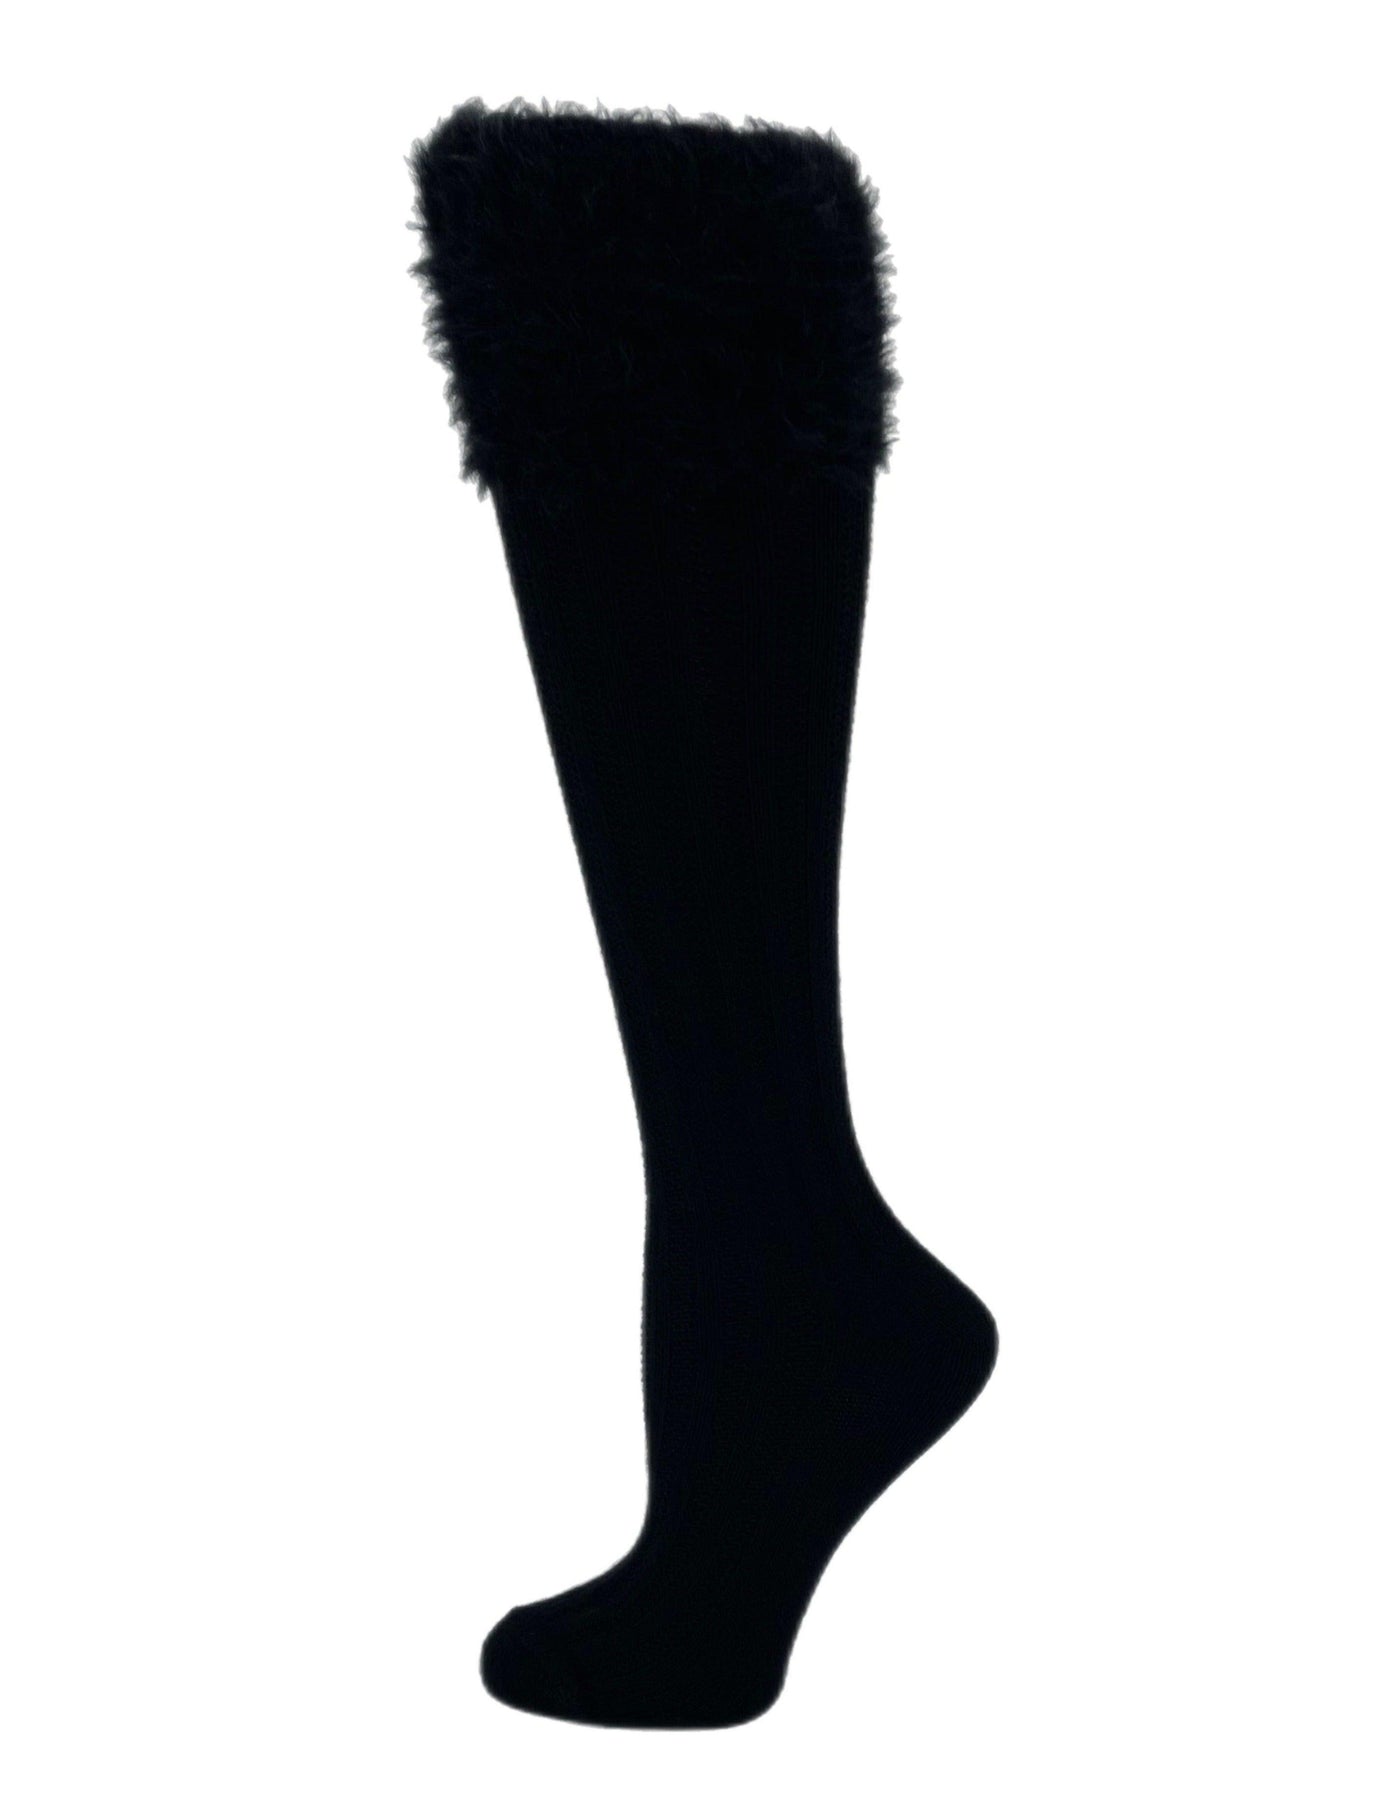 Skye | Women's Boot Sock - B.ella - The Sock Monster